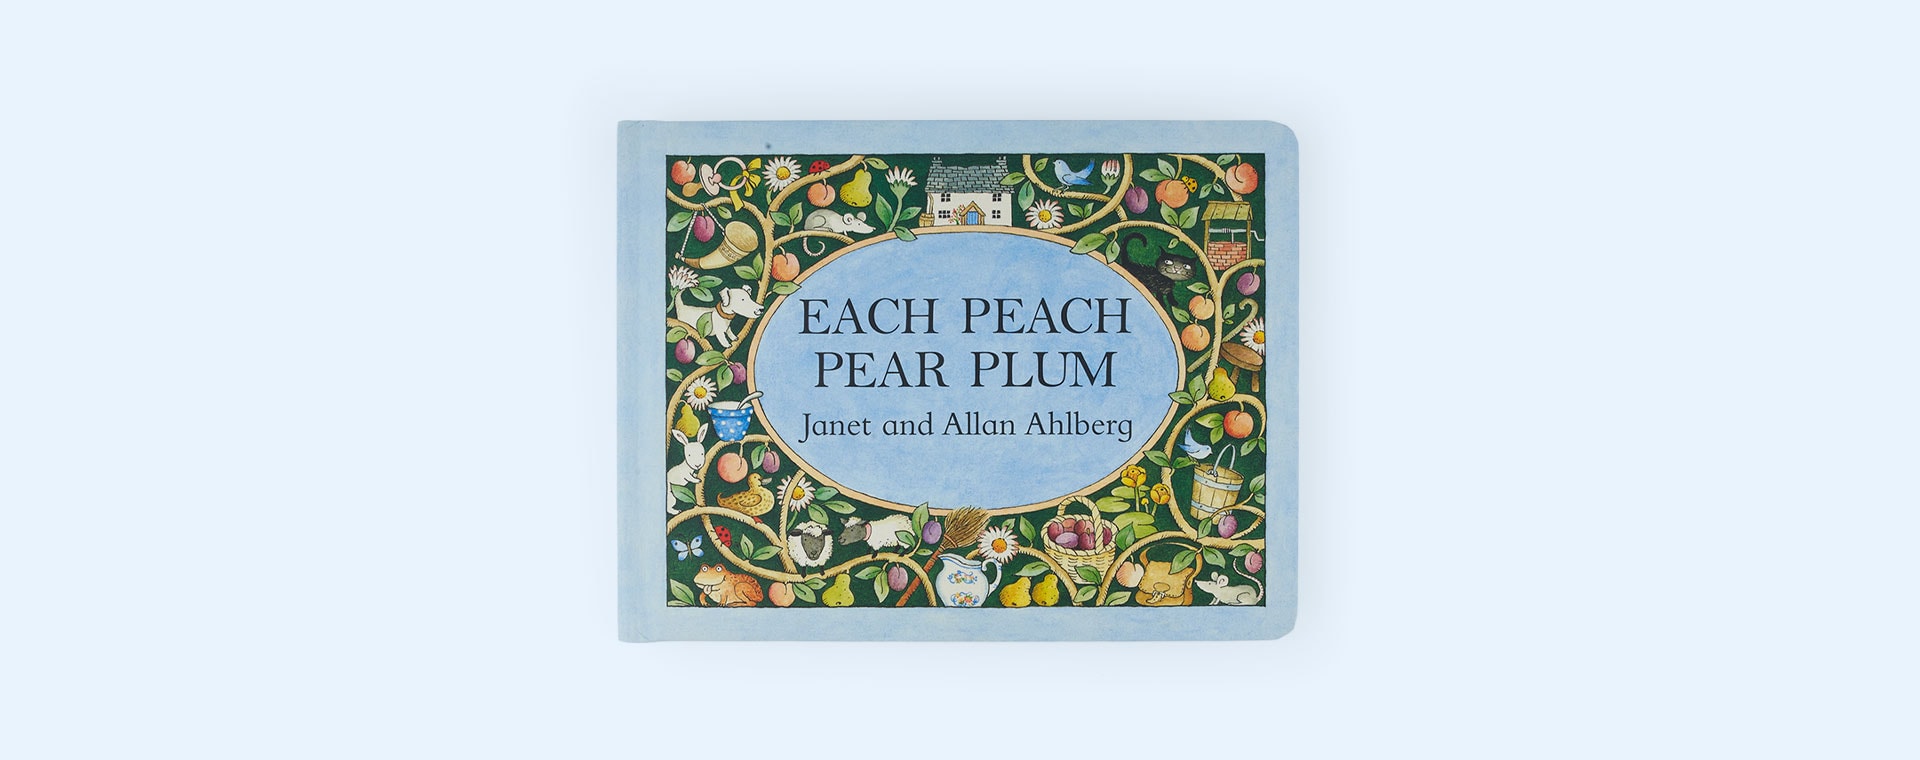 Each Peach Pear Plum bookspeed Each Peach Pear Plum